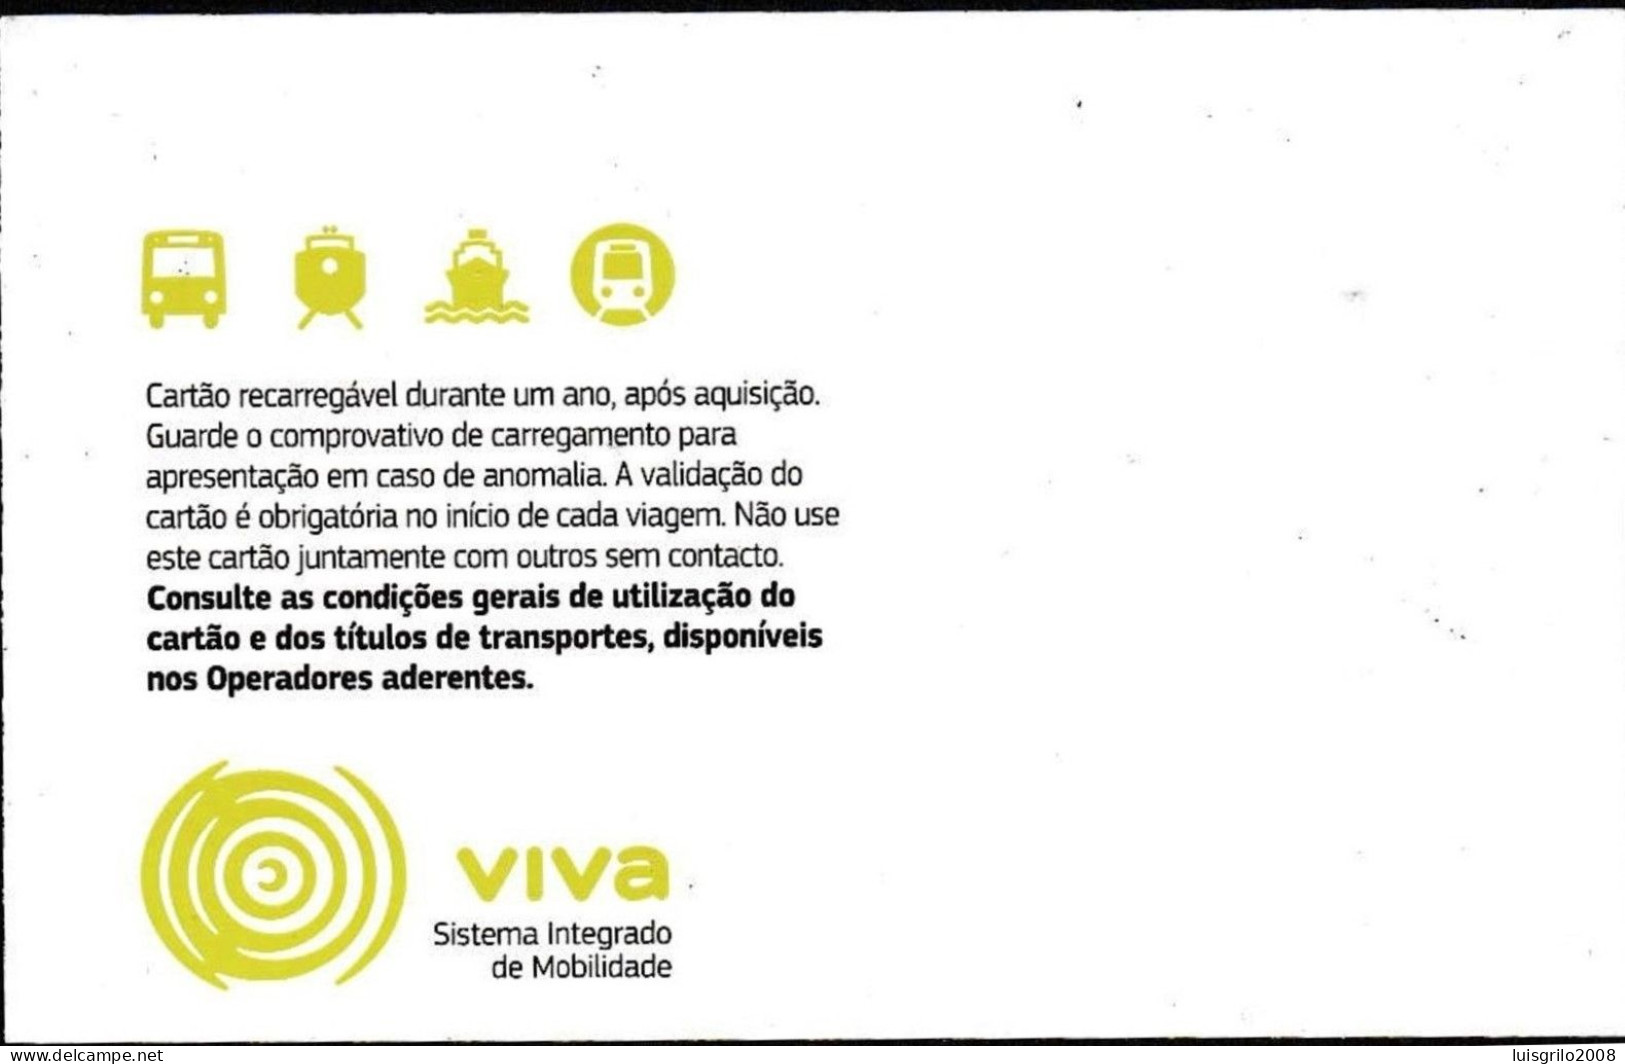 Portugal, PASSE 2018 - Viva Viagem -|- Operadores De Transportes Lisboa - Europe